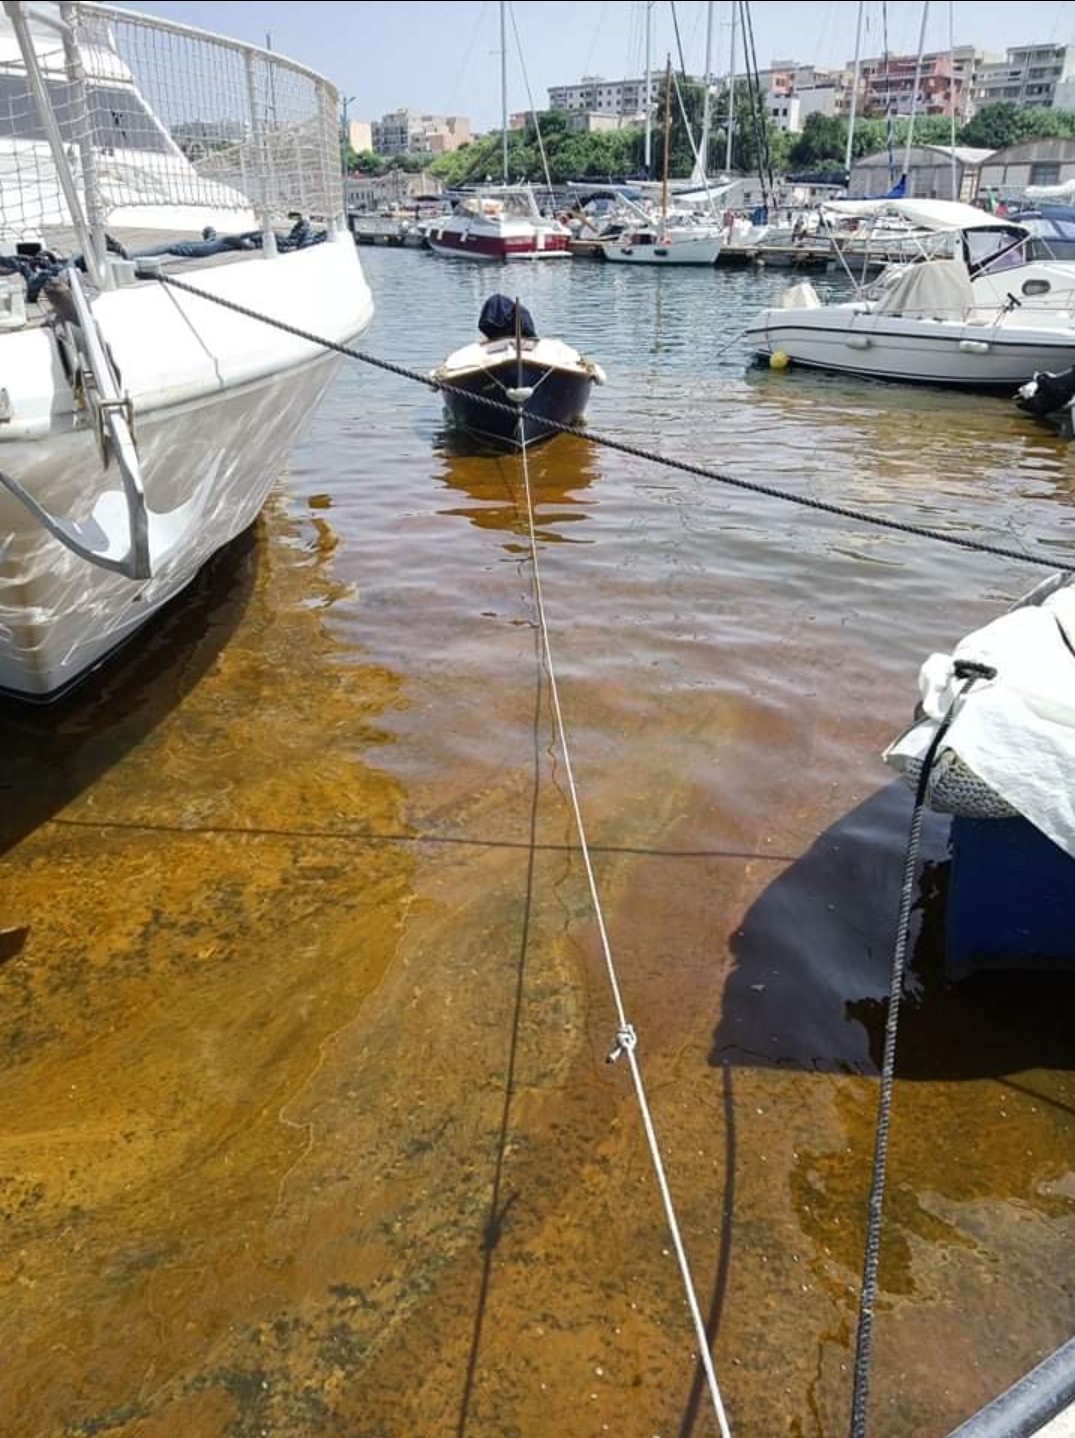 La nave della Marina perde 3 quintali di gasolio, Legambiente: “Inquinamento e malesseri”